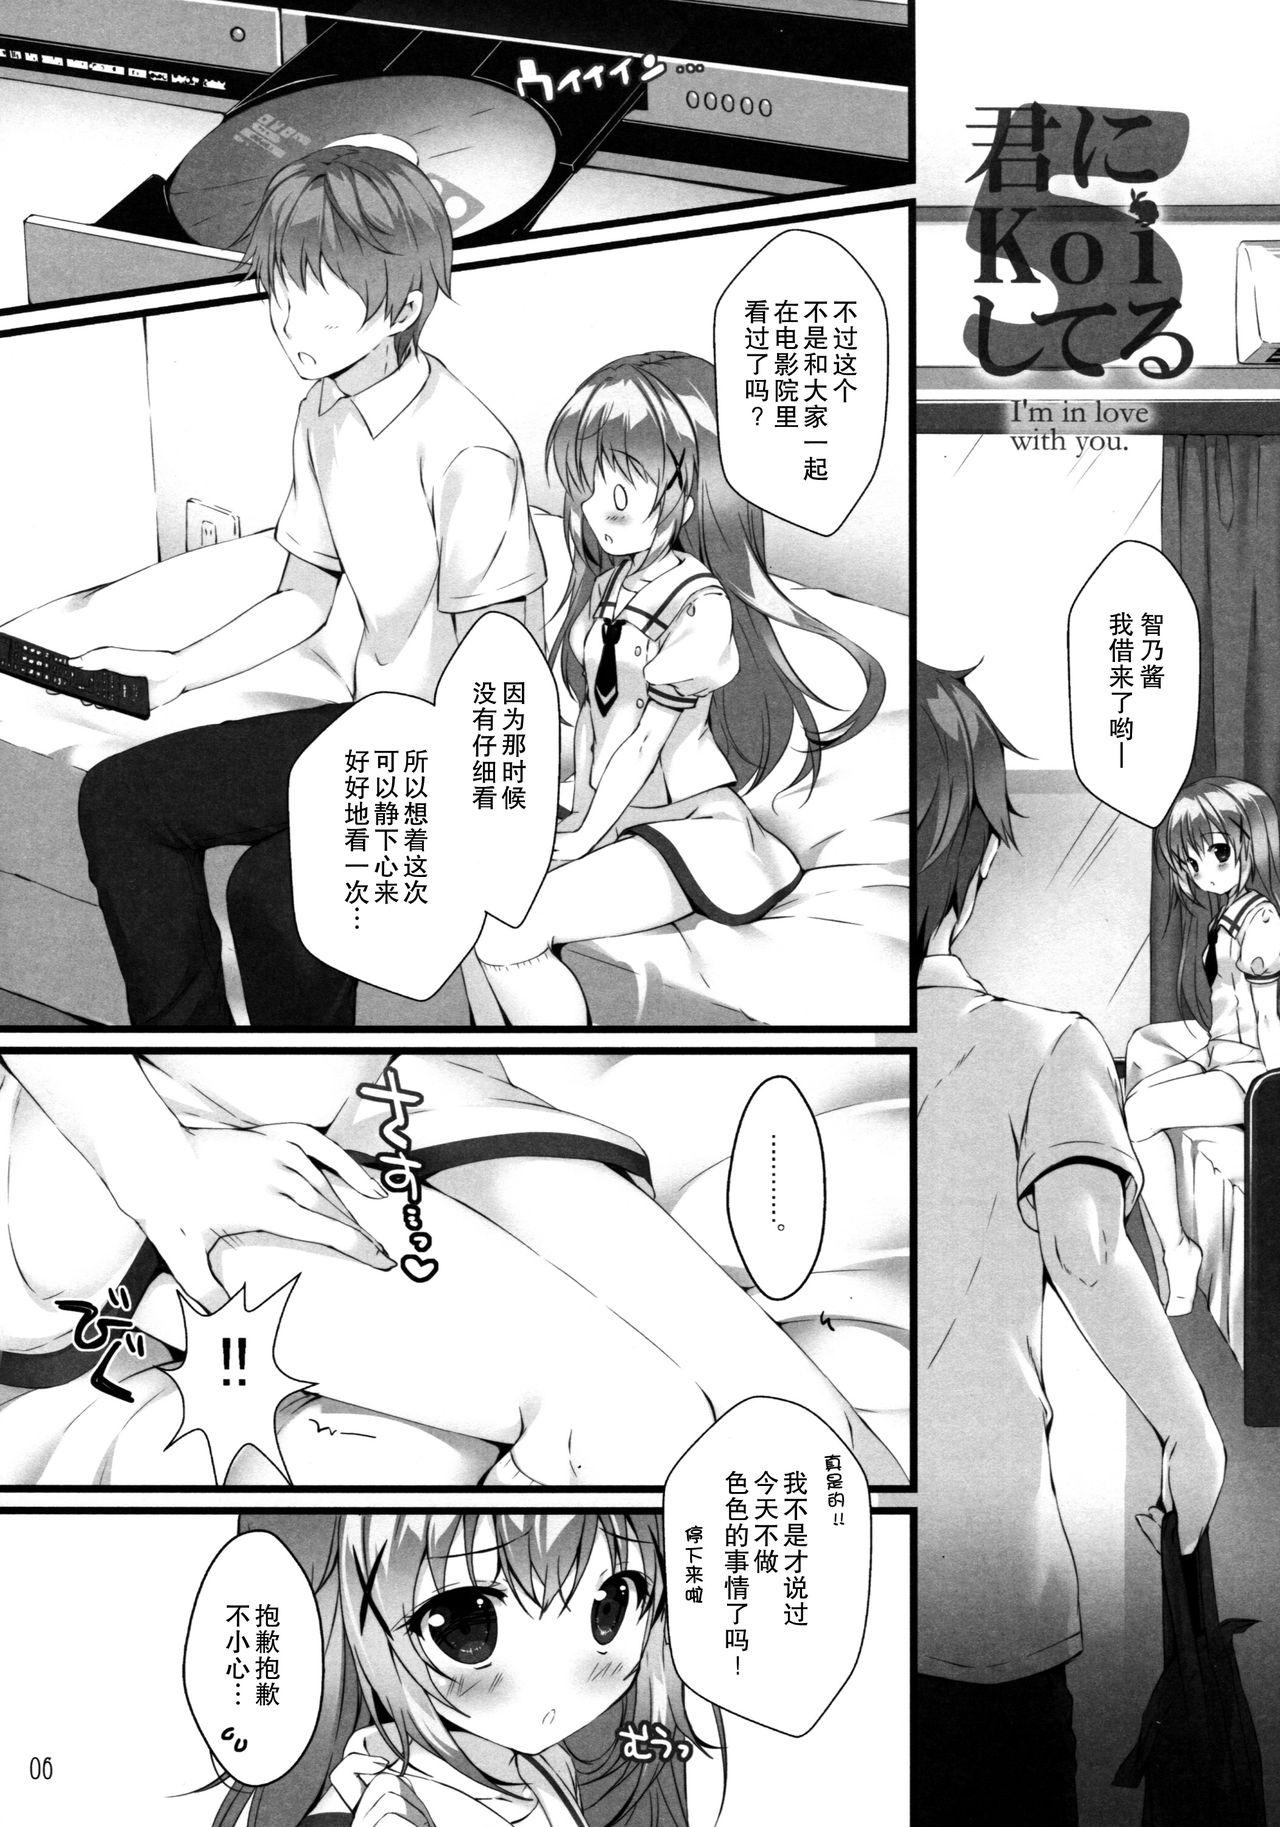 Doll Kimi ni koi Shiteru 5 - Gochuumon wa usagi desu ka Transexual - Page 6